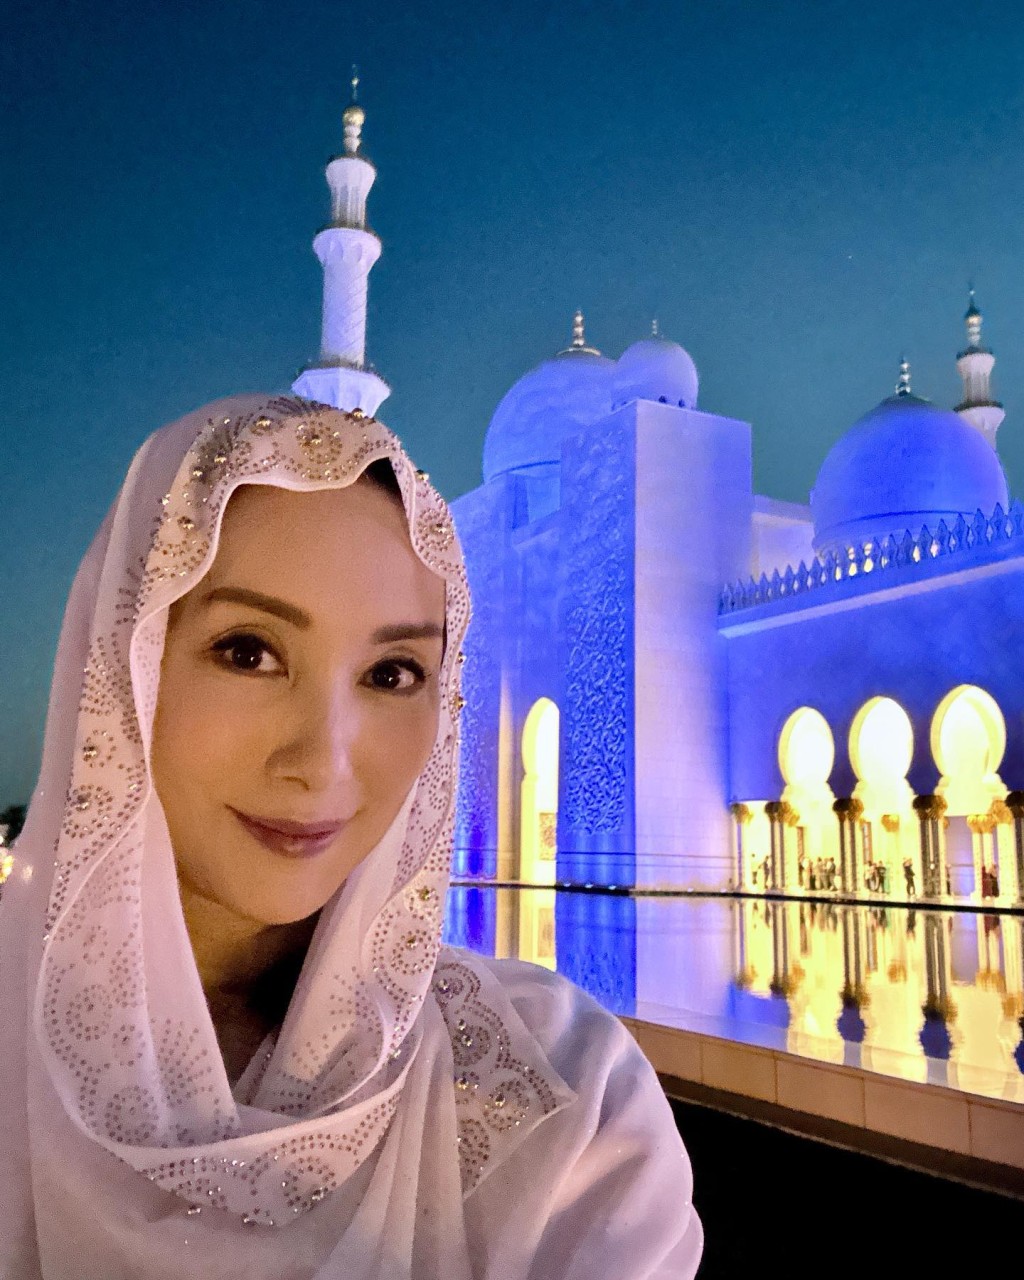 參觀清真寺時必須與中東婦女一樣換上傳統服飾。